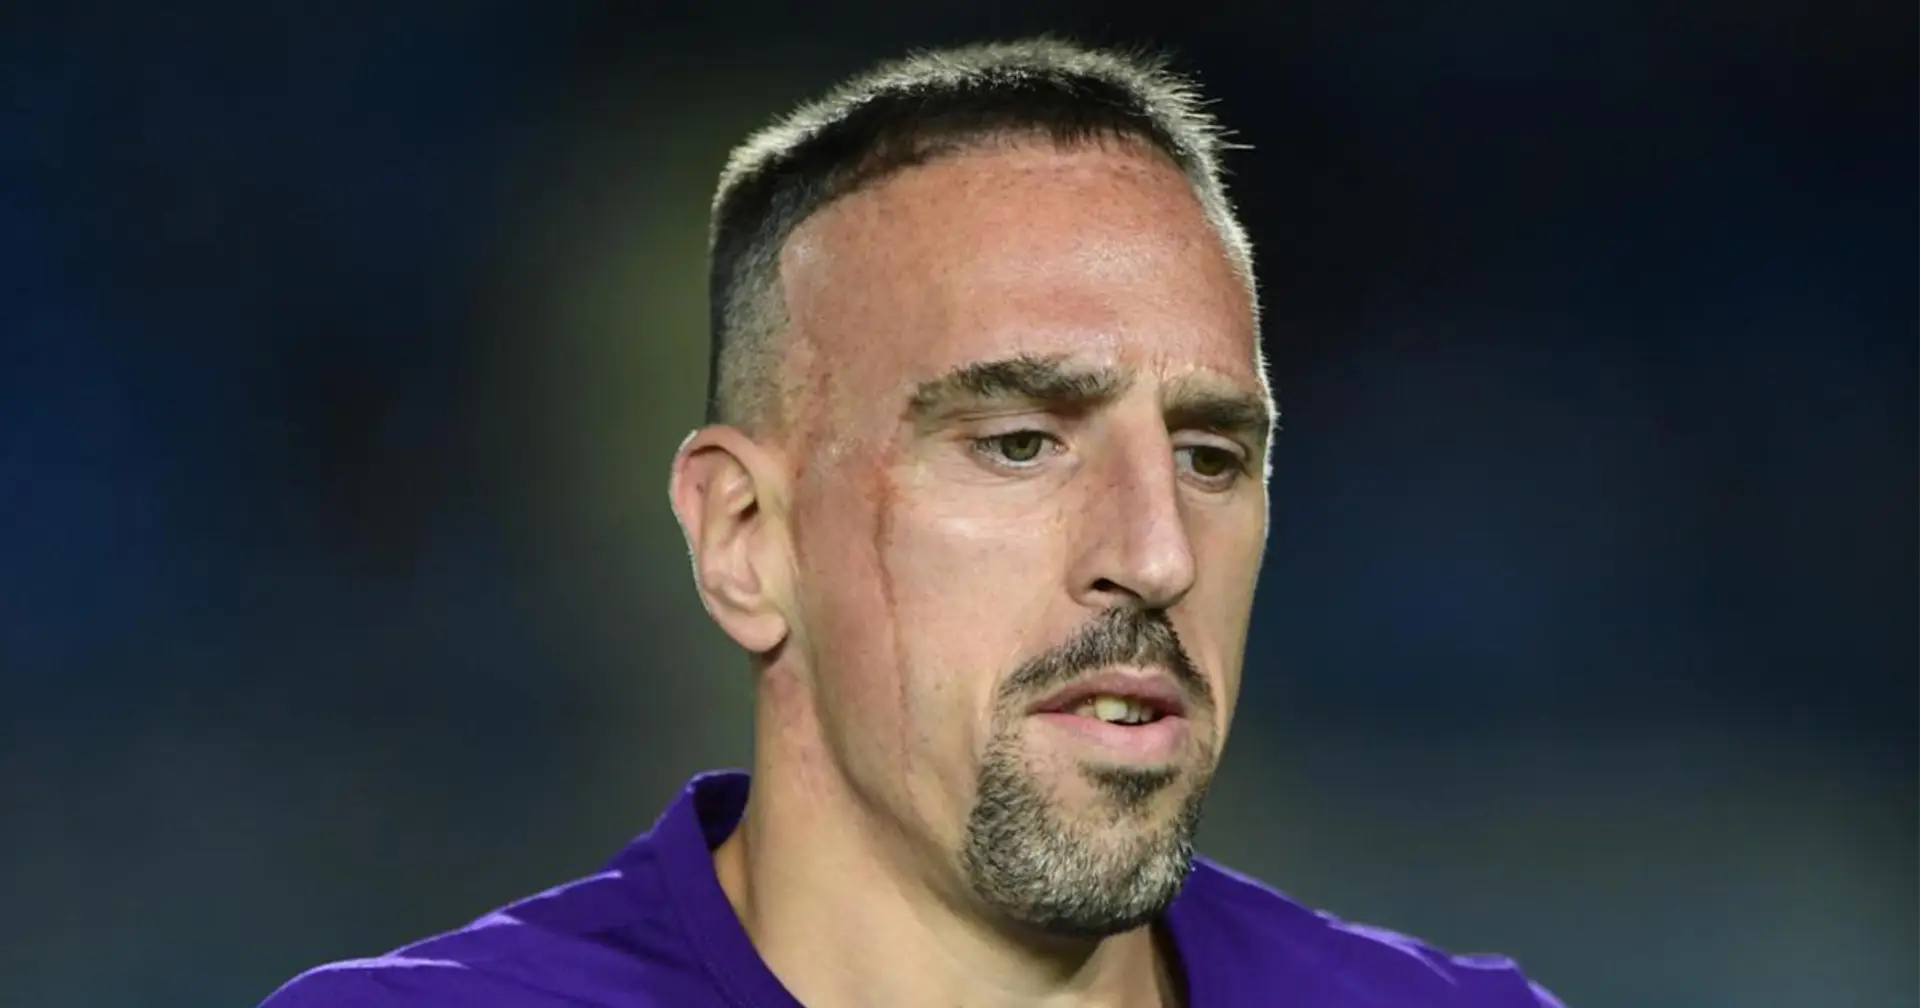 "On m'a manqué un peu de respect", Ribéry garde une amertume sur son départ de la fiorentina